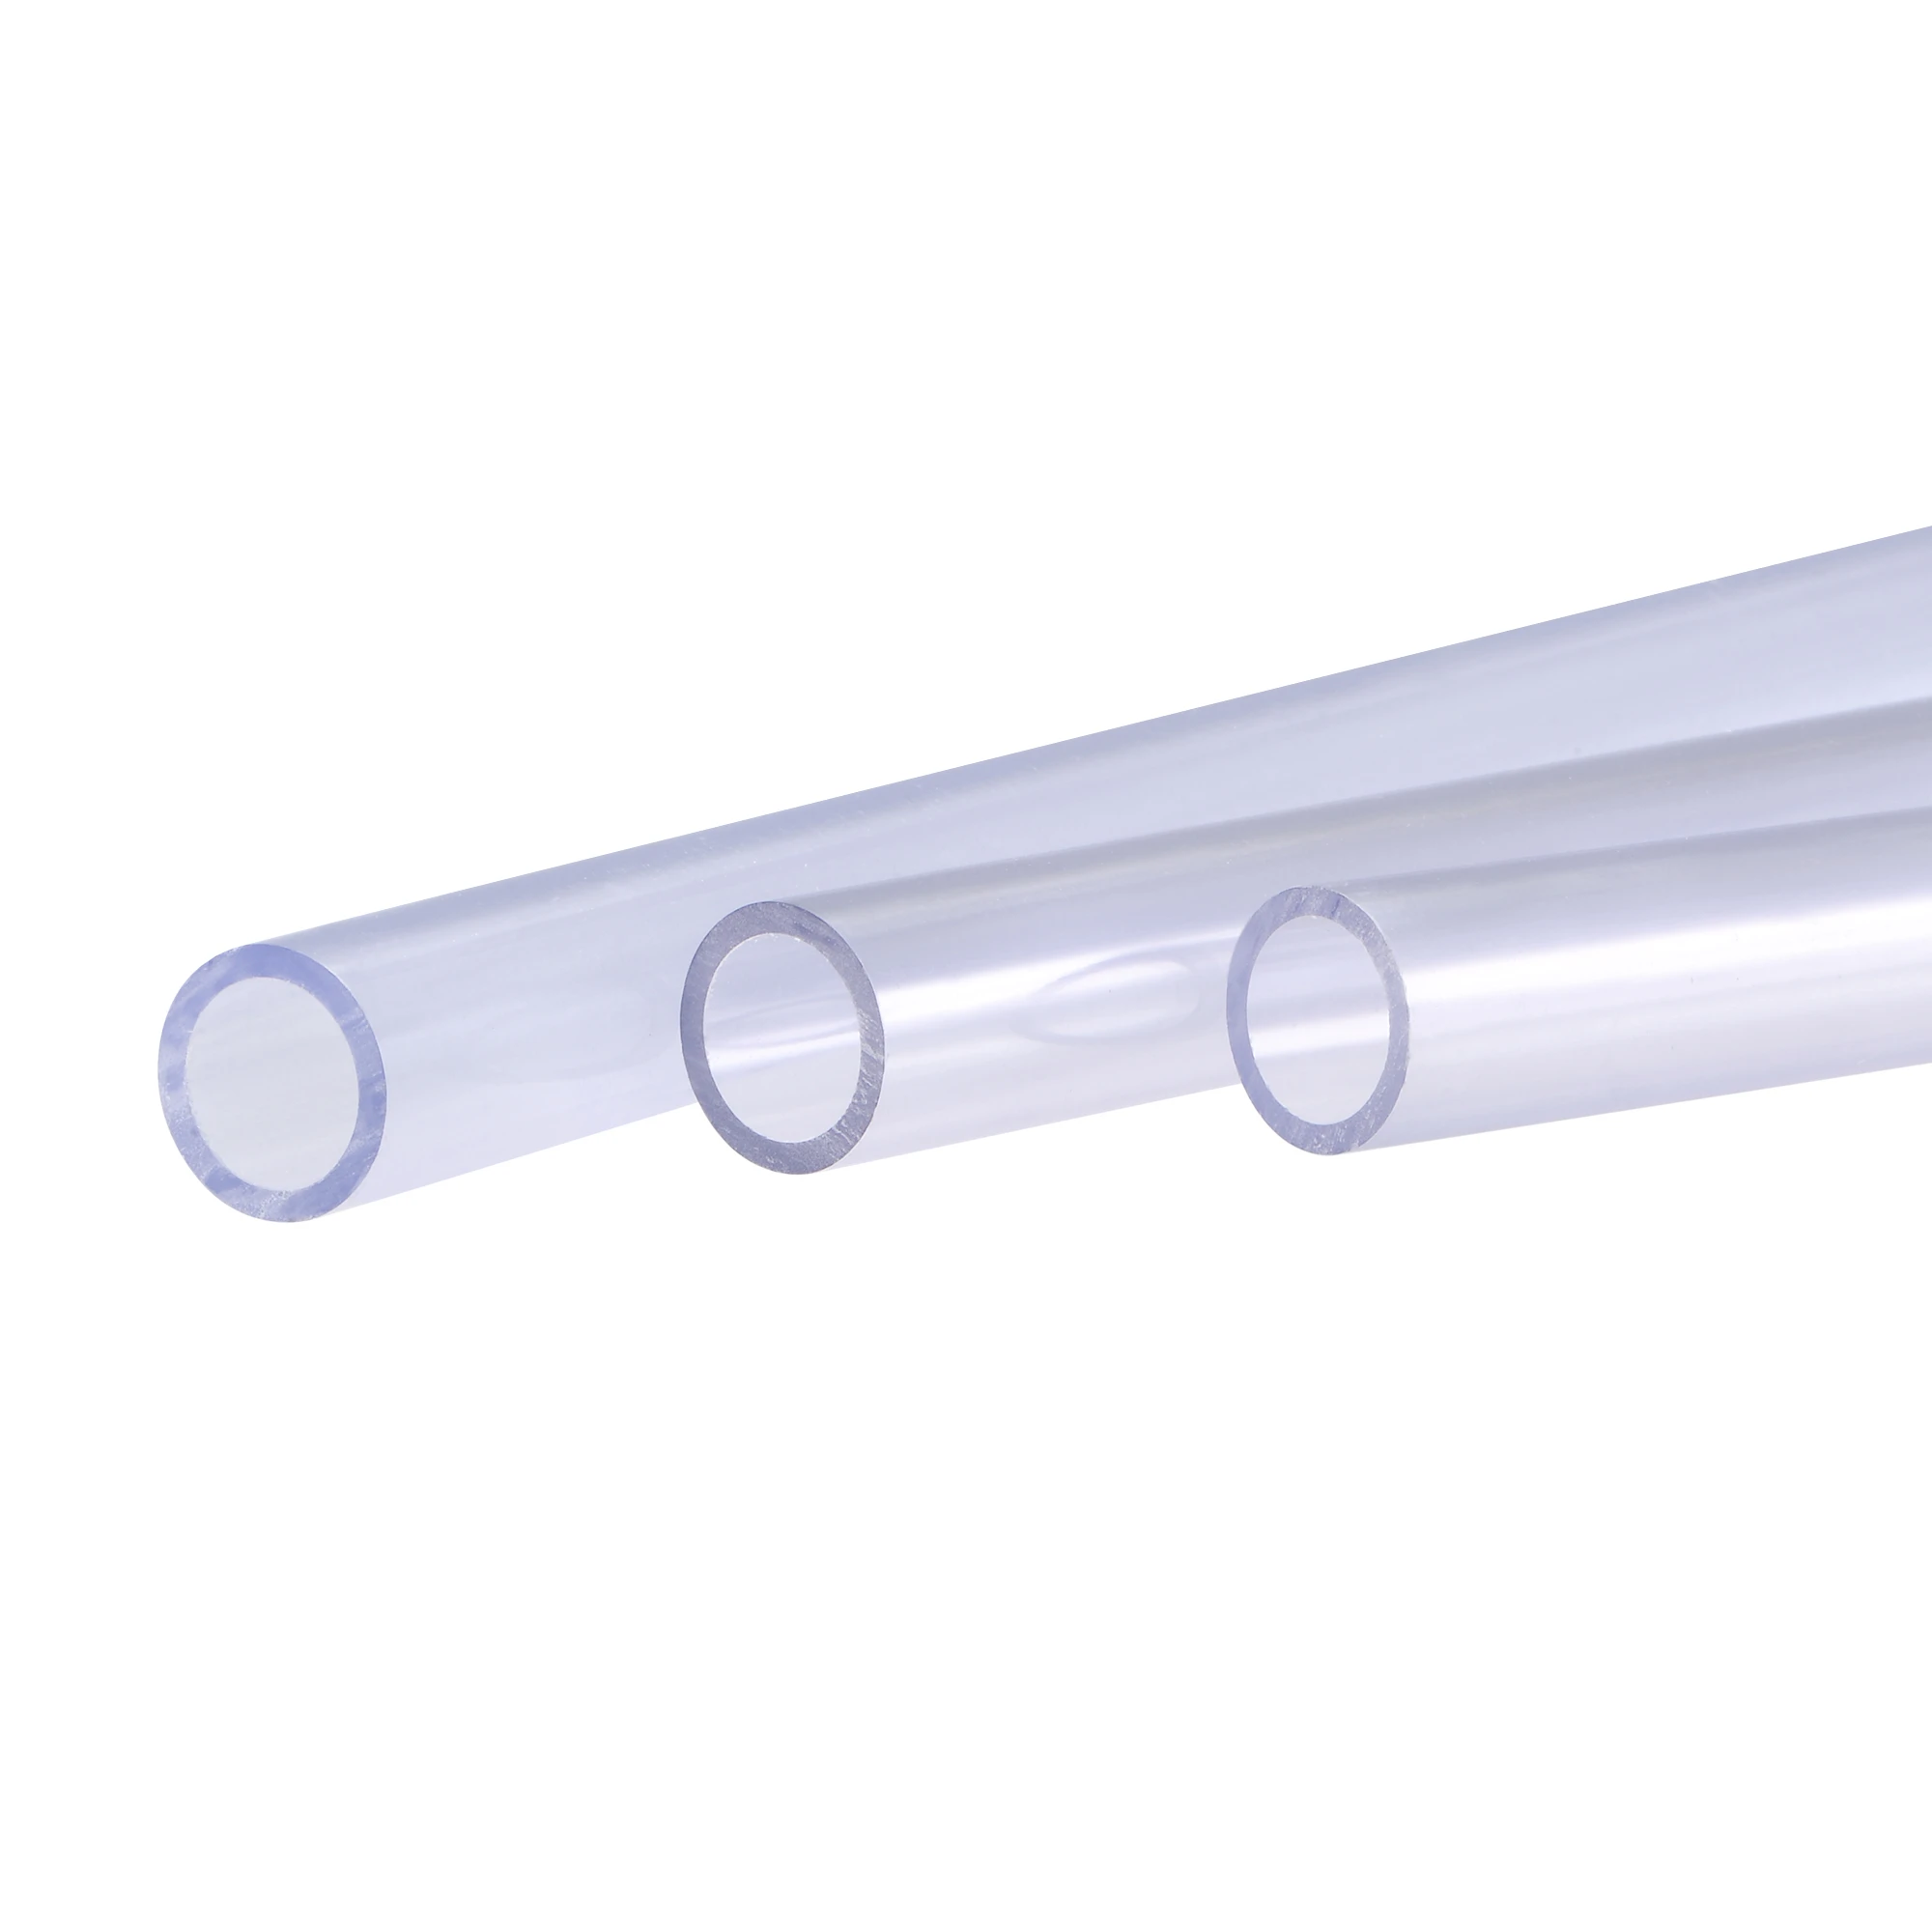 Uxcell 3 pezzi tubo in PVC trasparente 15mm ID x 20mm OD 0.5m tubo  dell'acqua rigido|Raccorderia per tubazioni| - AliExpress